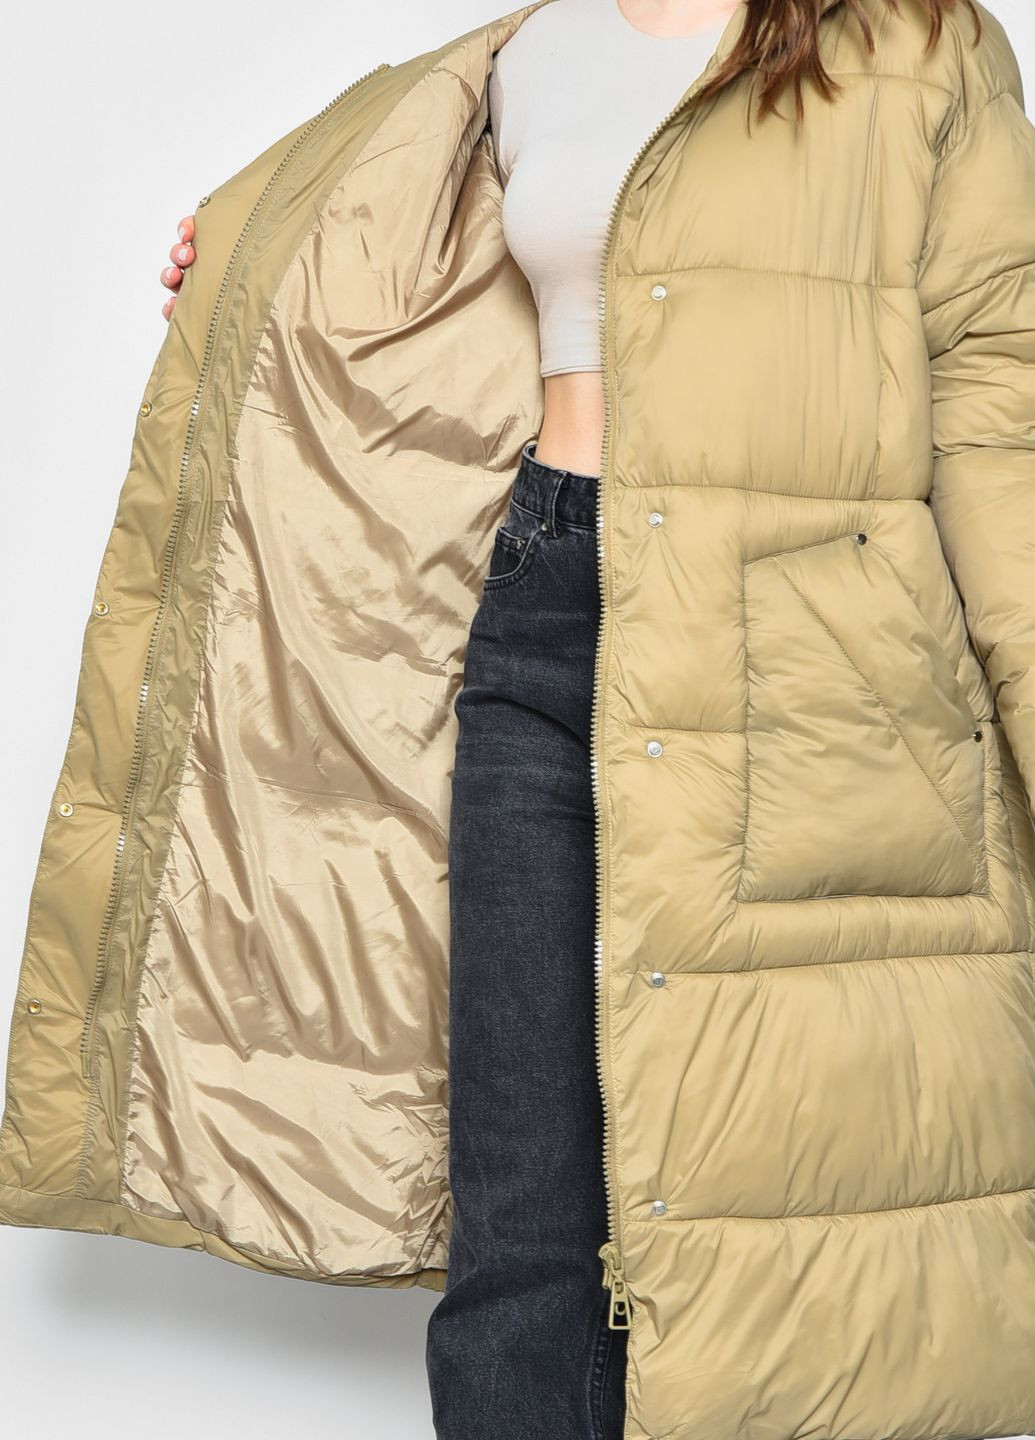 Оливковая зимняя куртка женская еврозима оливкового цвета с поясом Let's Shop